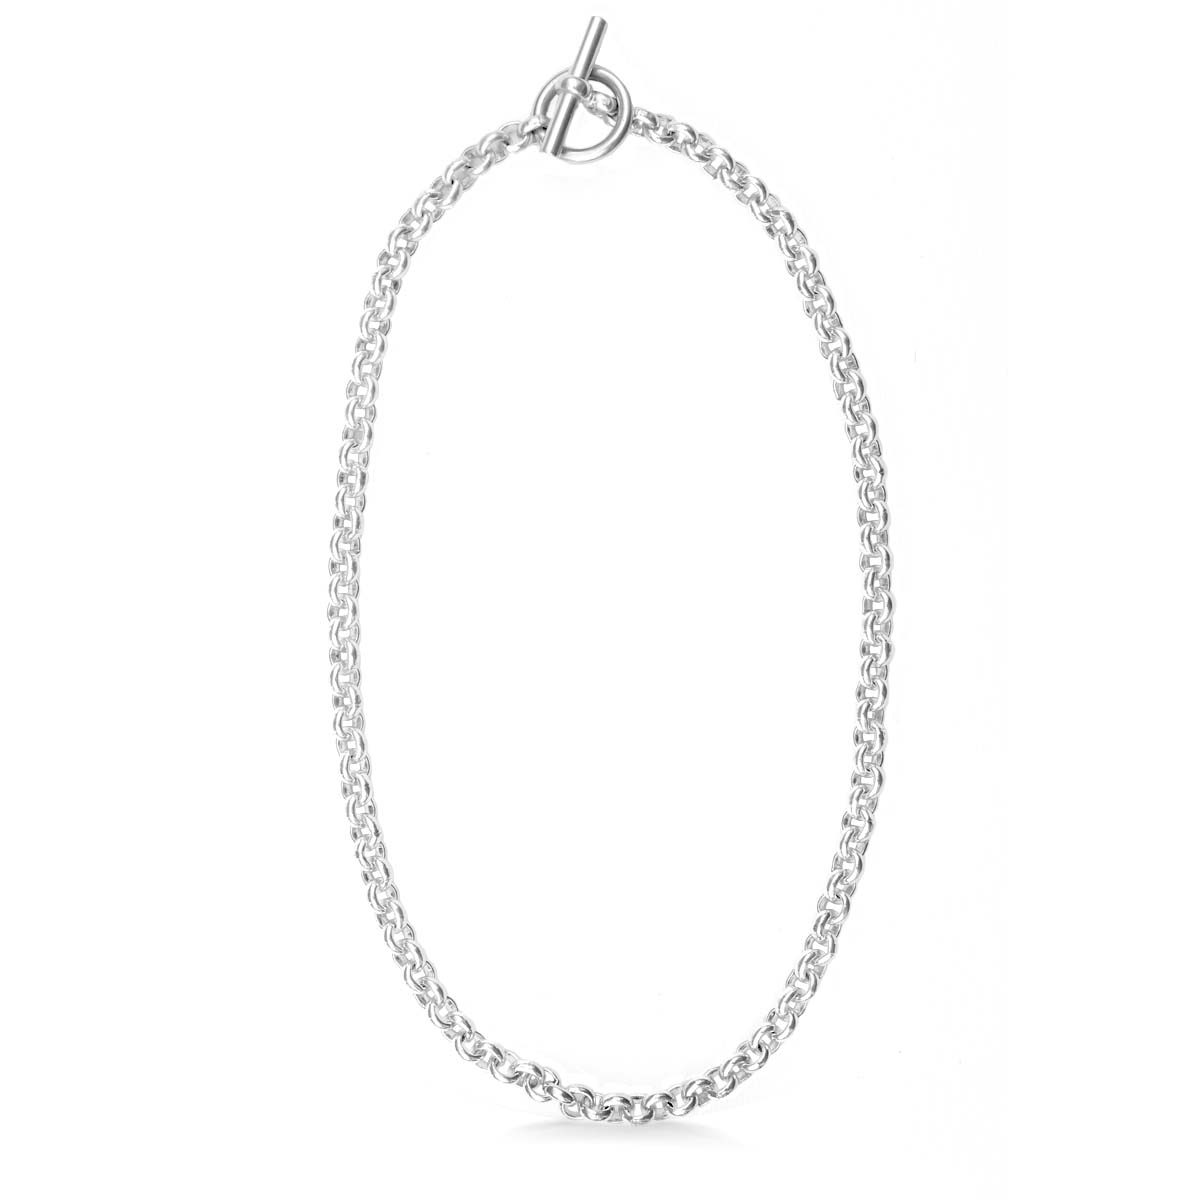 Silver Round Belcher chain necklace 